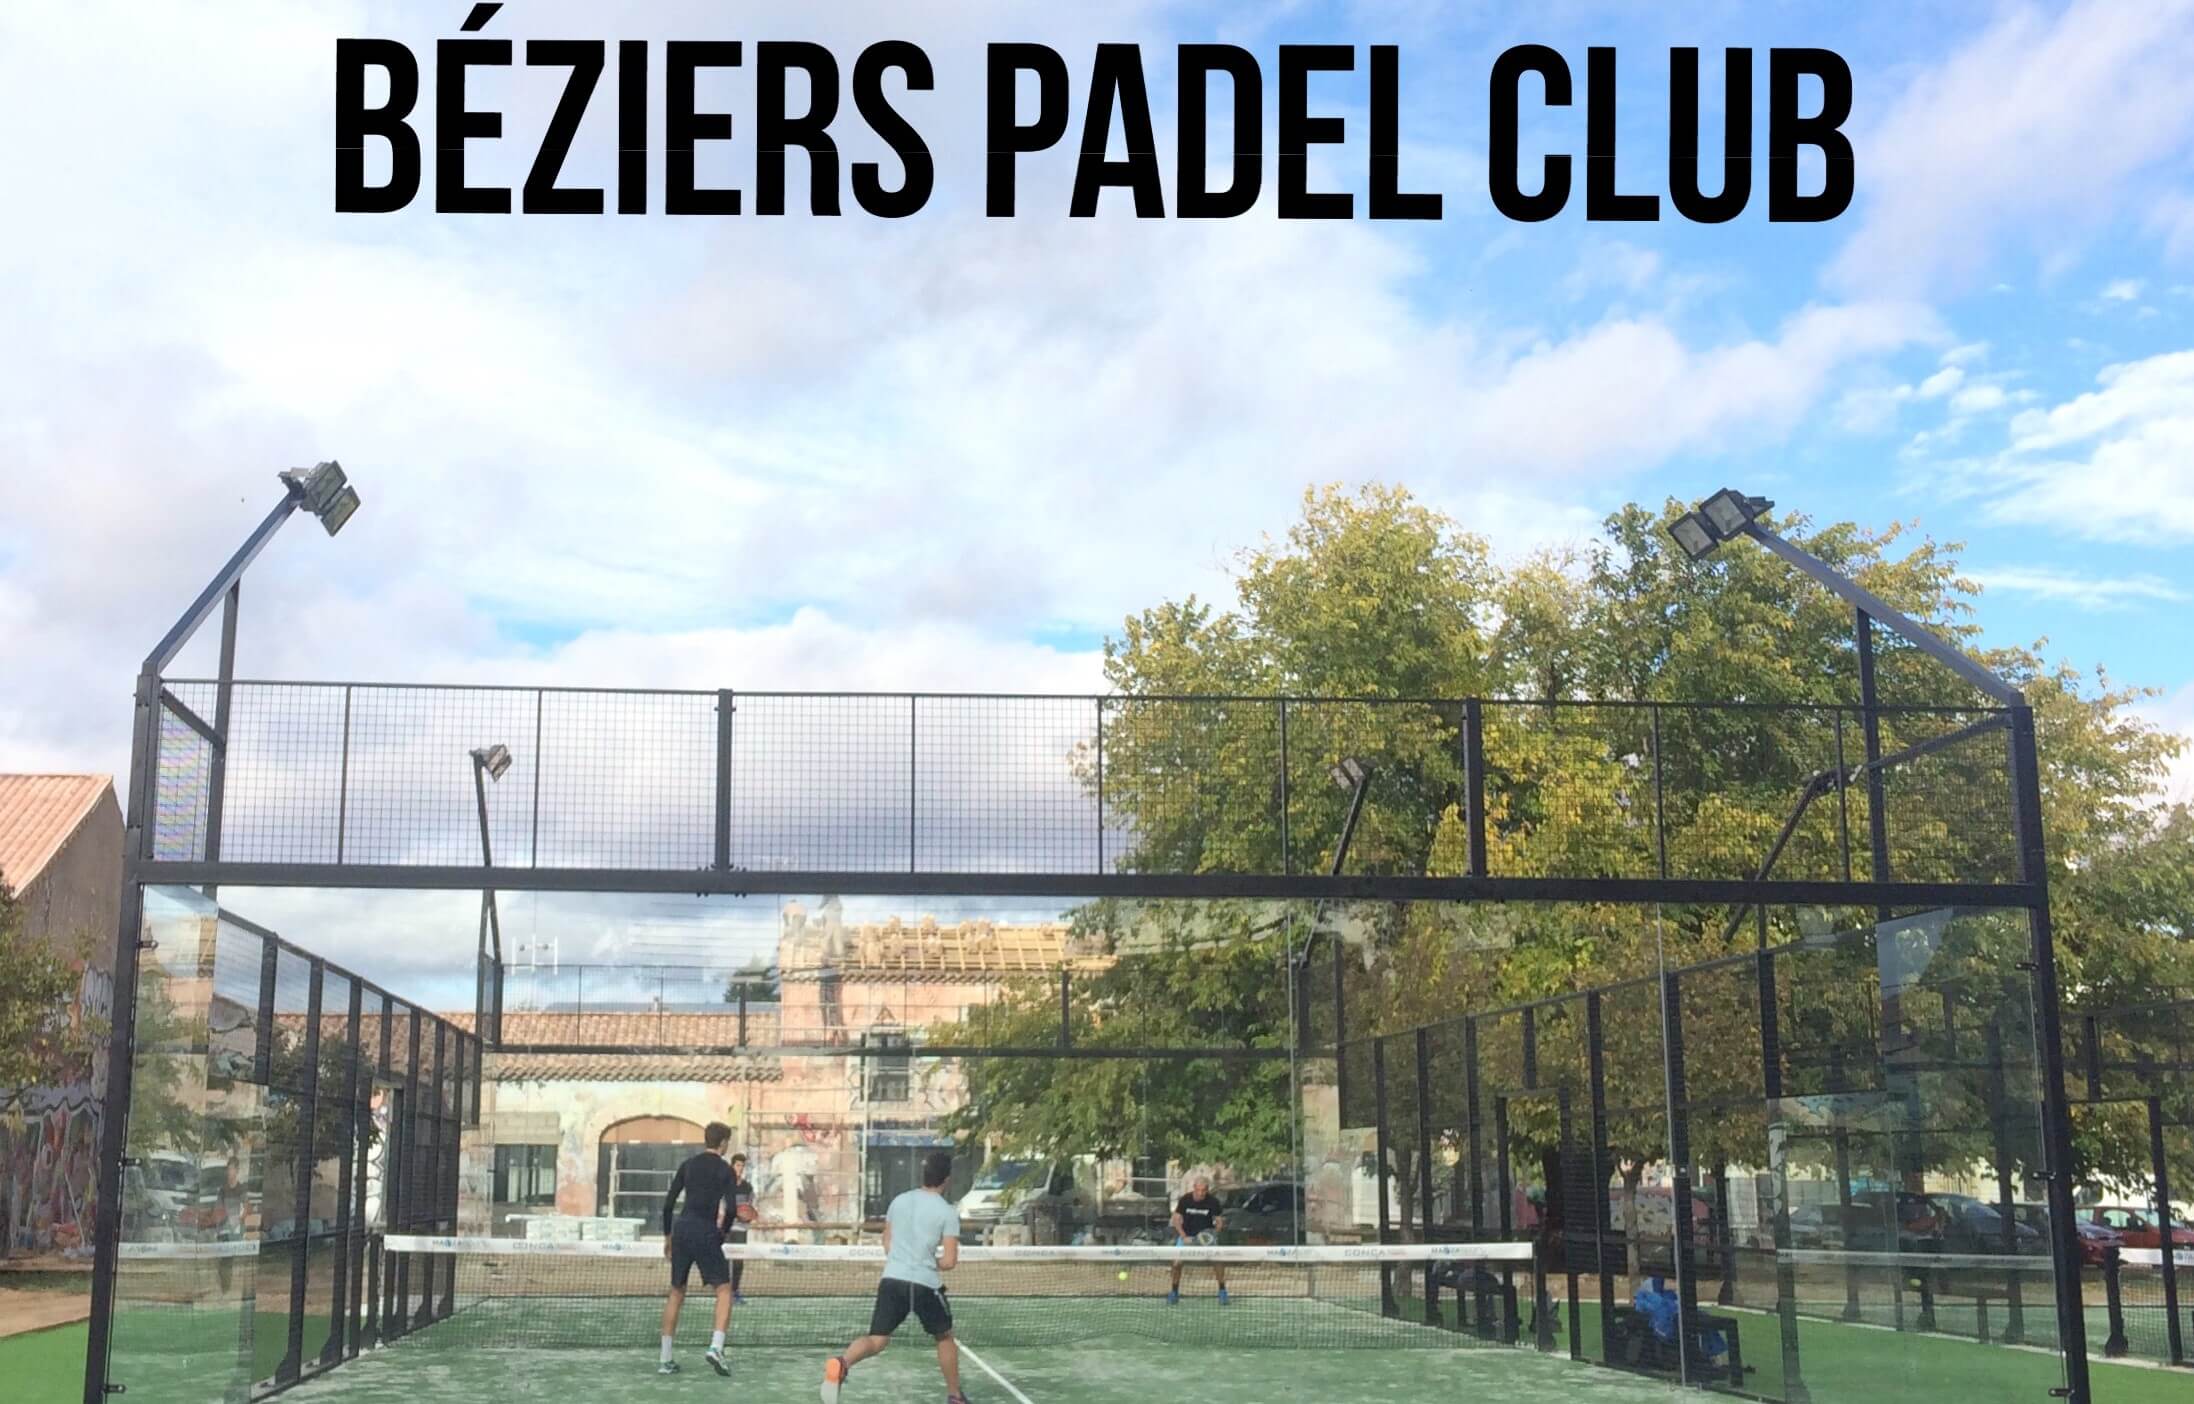 Listo para los torneos en Béziers Padel Club?